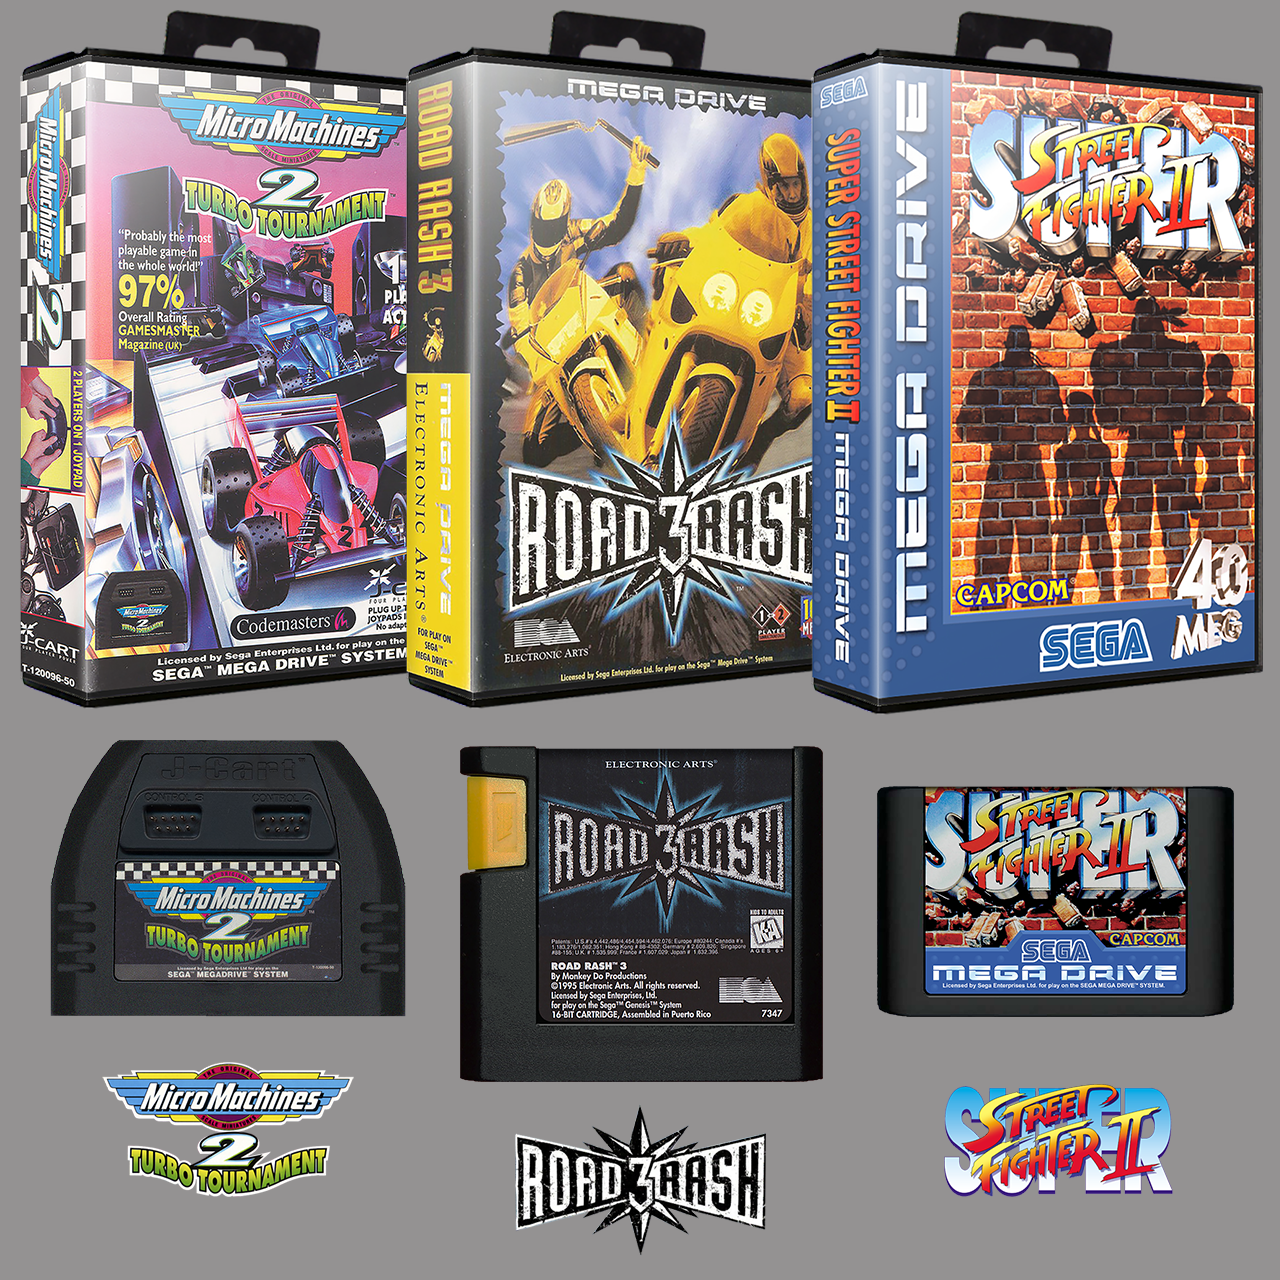 Sega Mega Drive World Championship Soccer PAL Cartridge